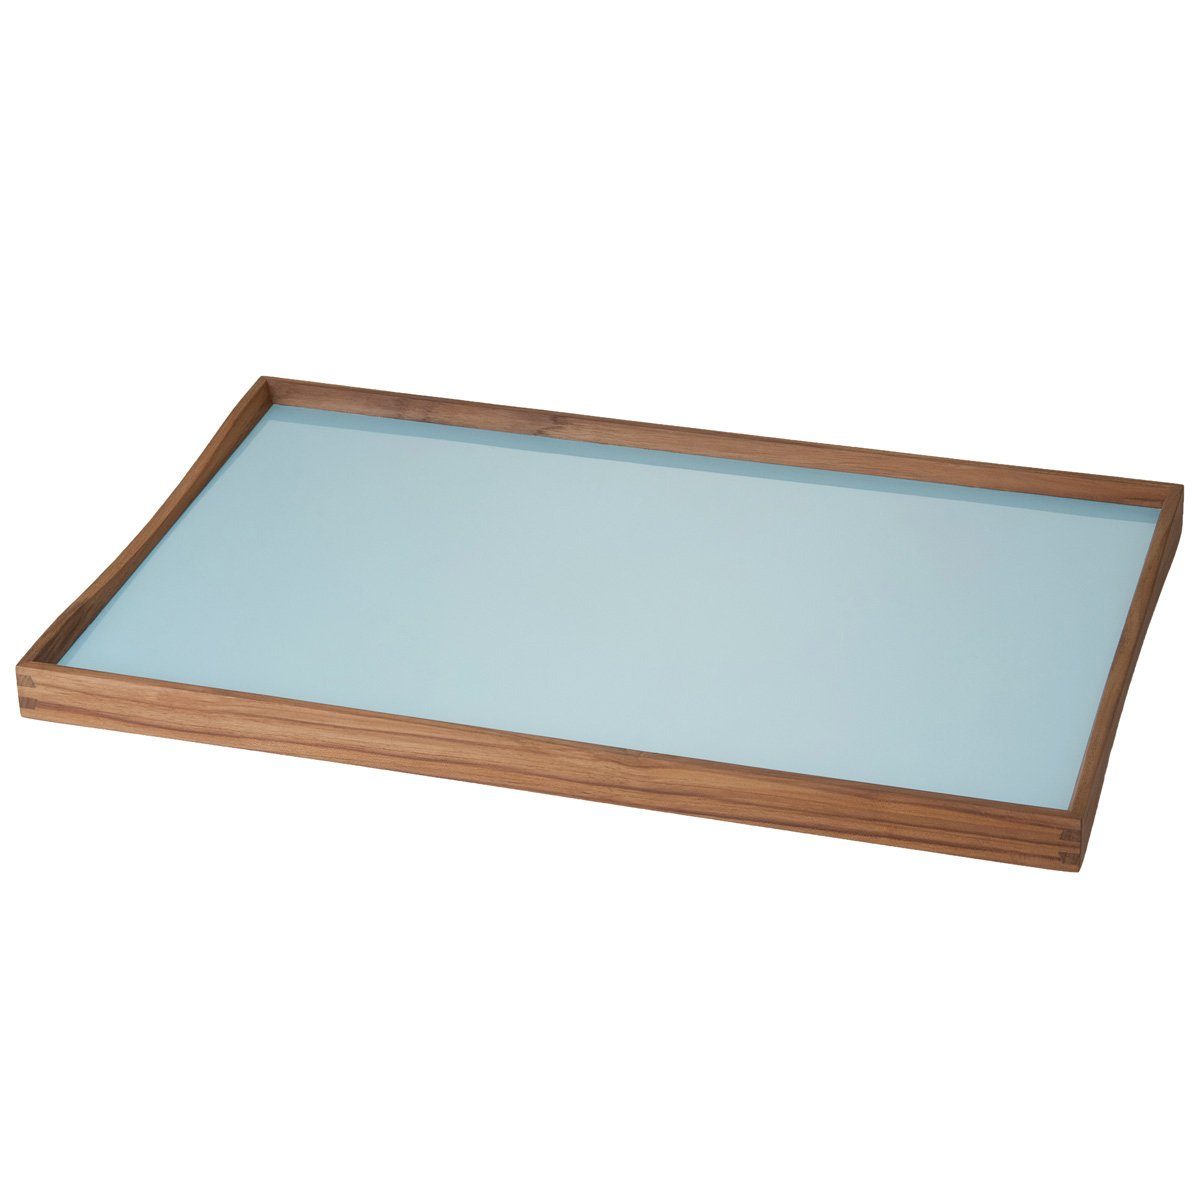 Turning Tablett Blau/Schwarz (Small); Architectmade x 23 in 45 cm Zweifarbiges Dekotablett Wendetablett aus Tray Laminat/Teakholz; Serviertablett